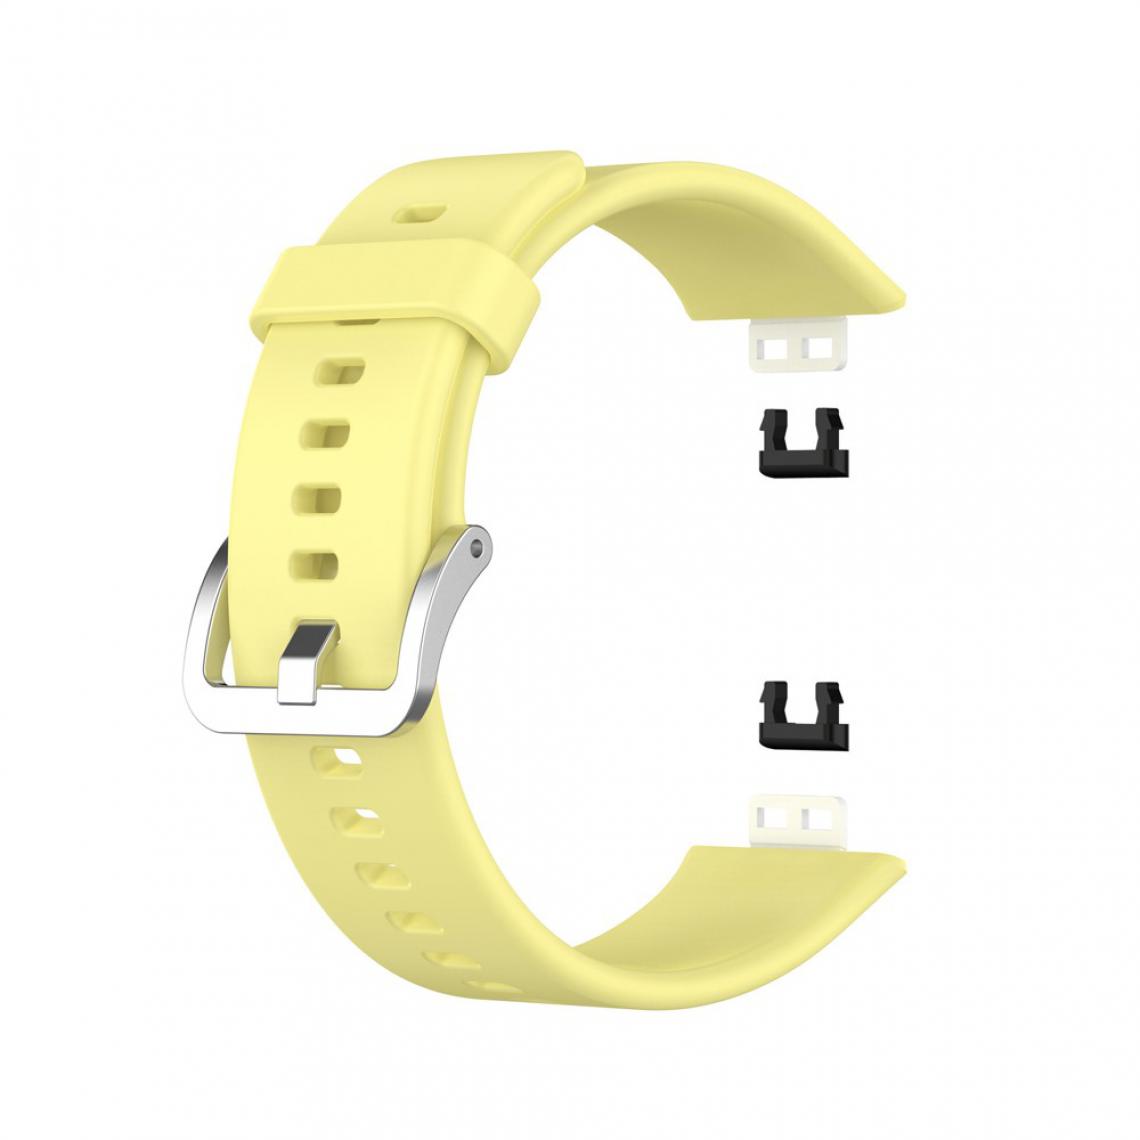 Other - Bracelet en silicone Boucle souple jaune pour votre Huawei Watch Fit 2020 - Accessoires bracelet connecté